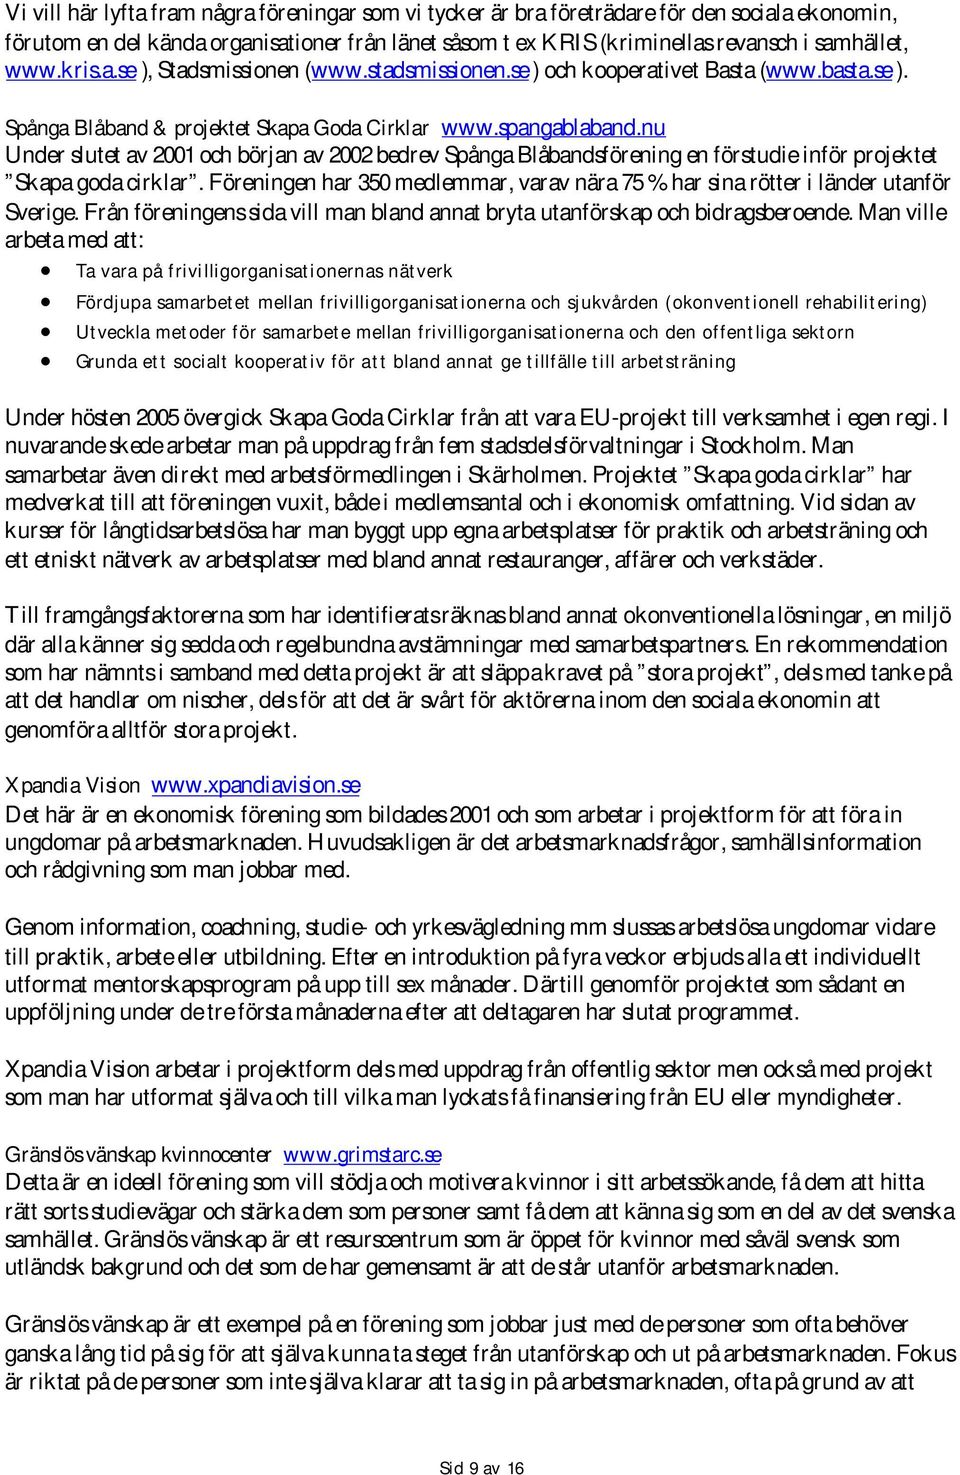 nu Under slutet av 2001 och början av 2002 bedrev Spånga Blåbandsförening en förstudie inför projektet Skapa goda cirklar.